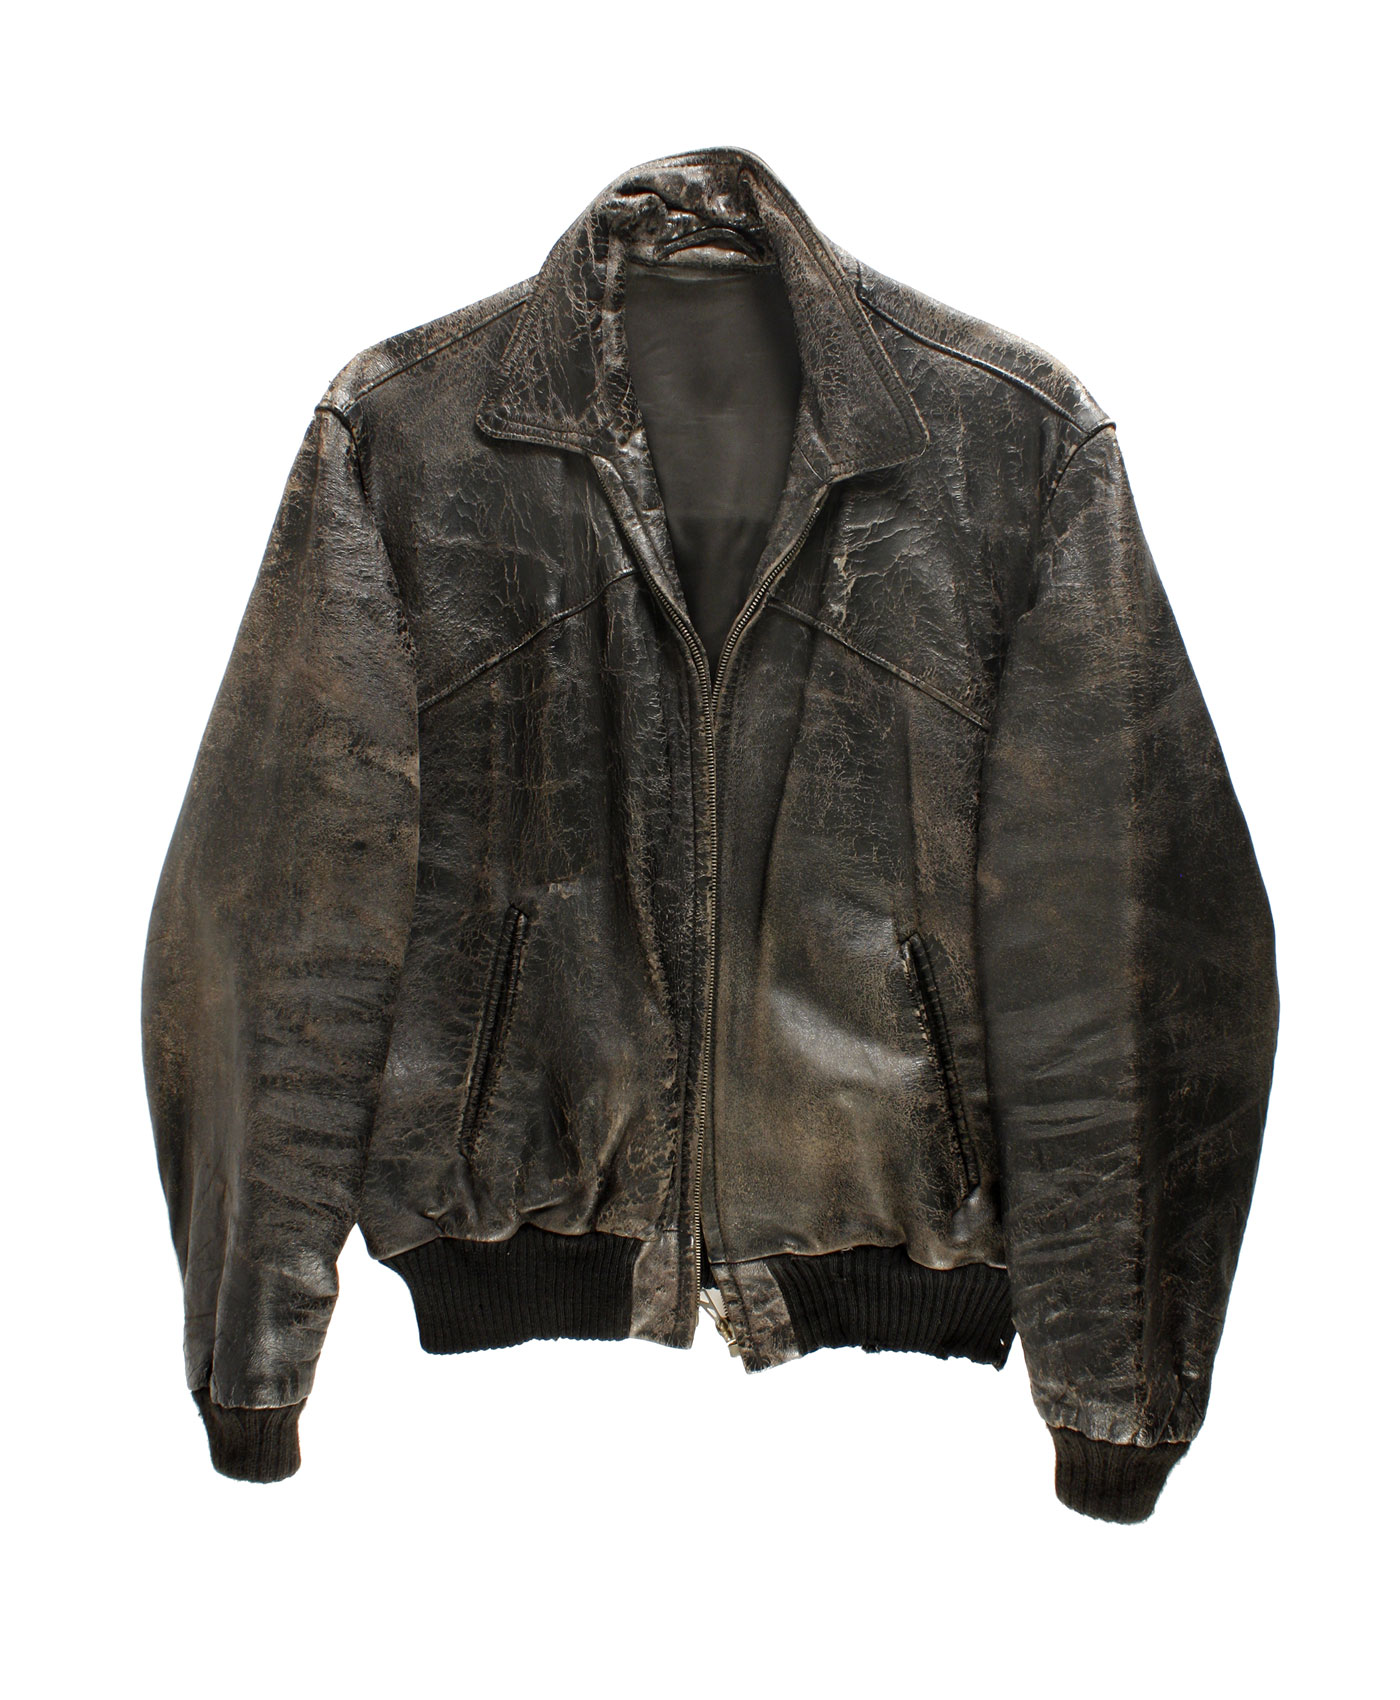 Leather jacket 70s